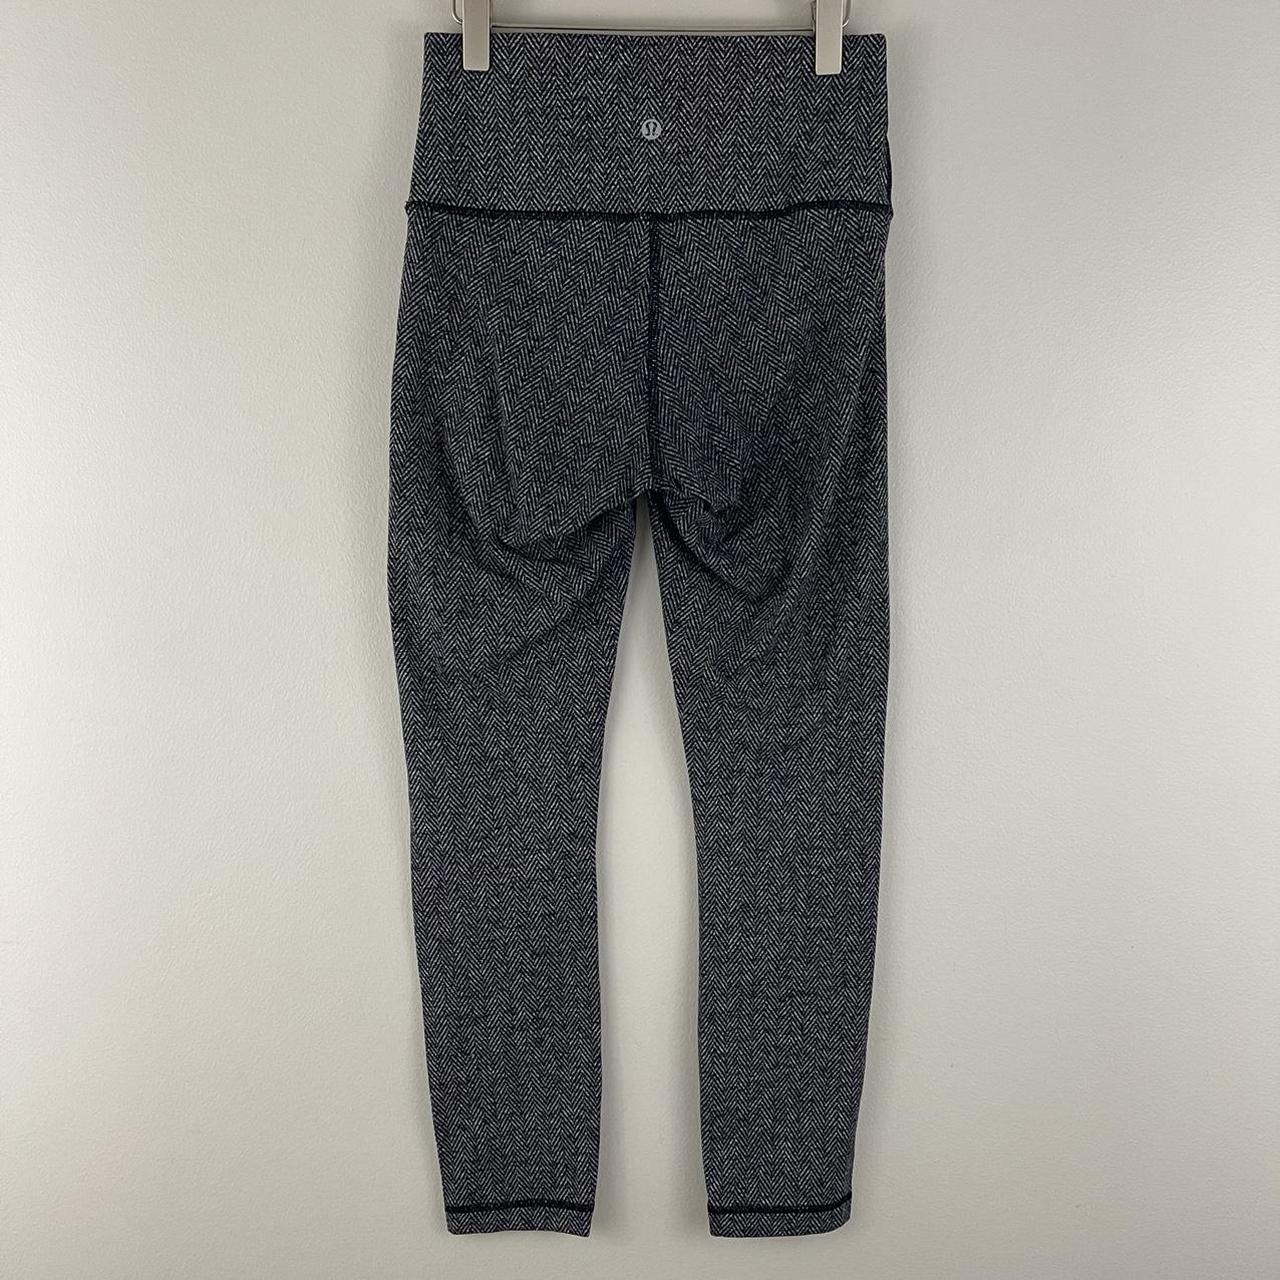 Lululemon Black/Gray herringbone knit wunder under leggings 4